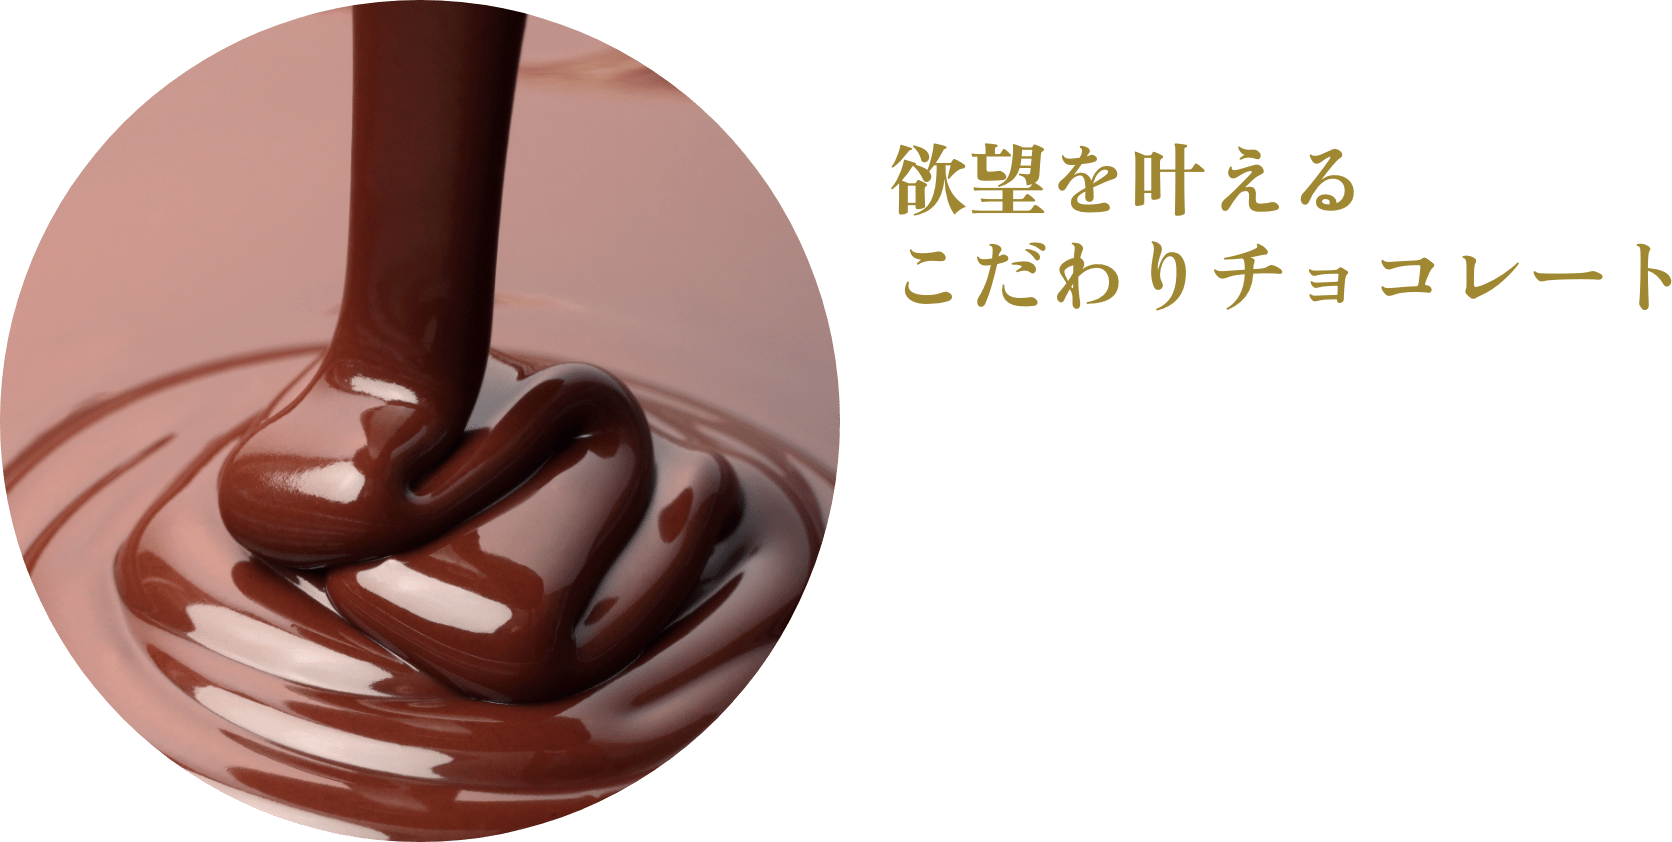 欲望を叶えるこだわりチョコレート塩せんべいに染み込みやすいように作られたオリジナルのミルクチョコレート。「チョコしみ込ませマシーン」を沖縄県内では初導入したことにより、塩せんべいにチョコを染み込ませることができました。まろやかなミルクチョコがジュワッと口の中に広がります。